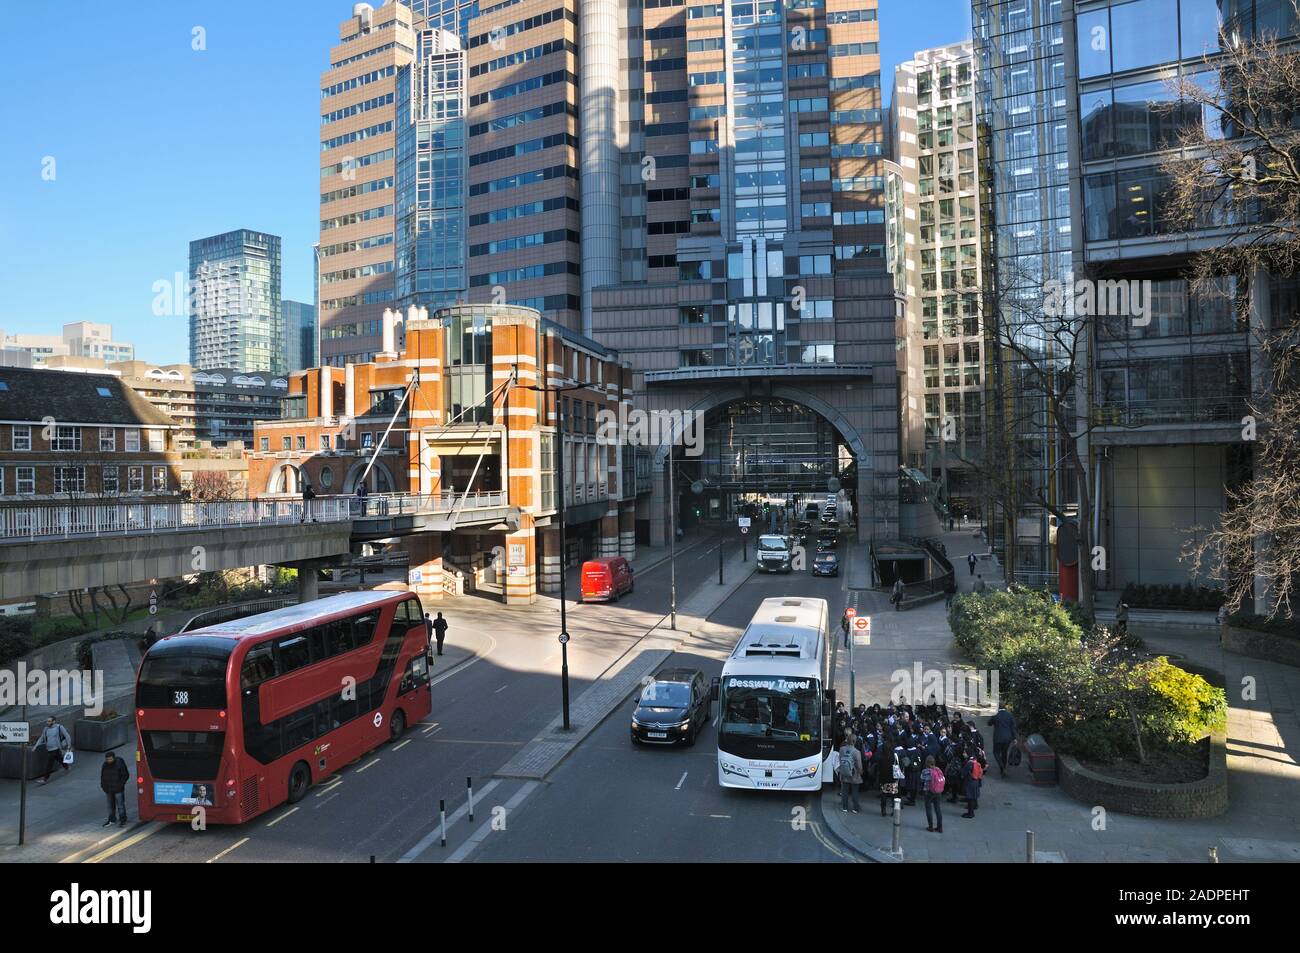 Un passaggio pedonale vista 125 London Wall, noto anche come Alban Gate, un edificio postmodernist nella città di Londra. Architetto: Sir Terry Farrell Foto Stock